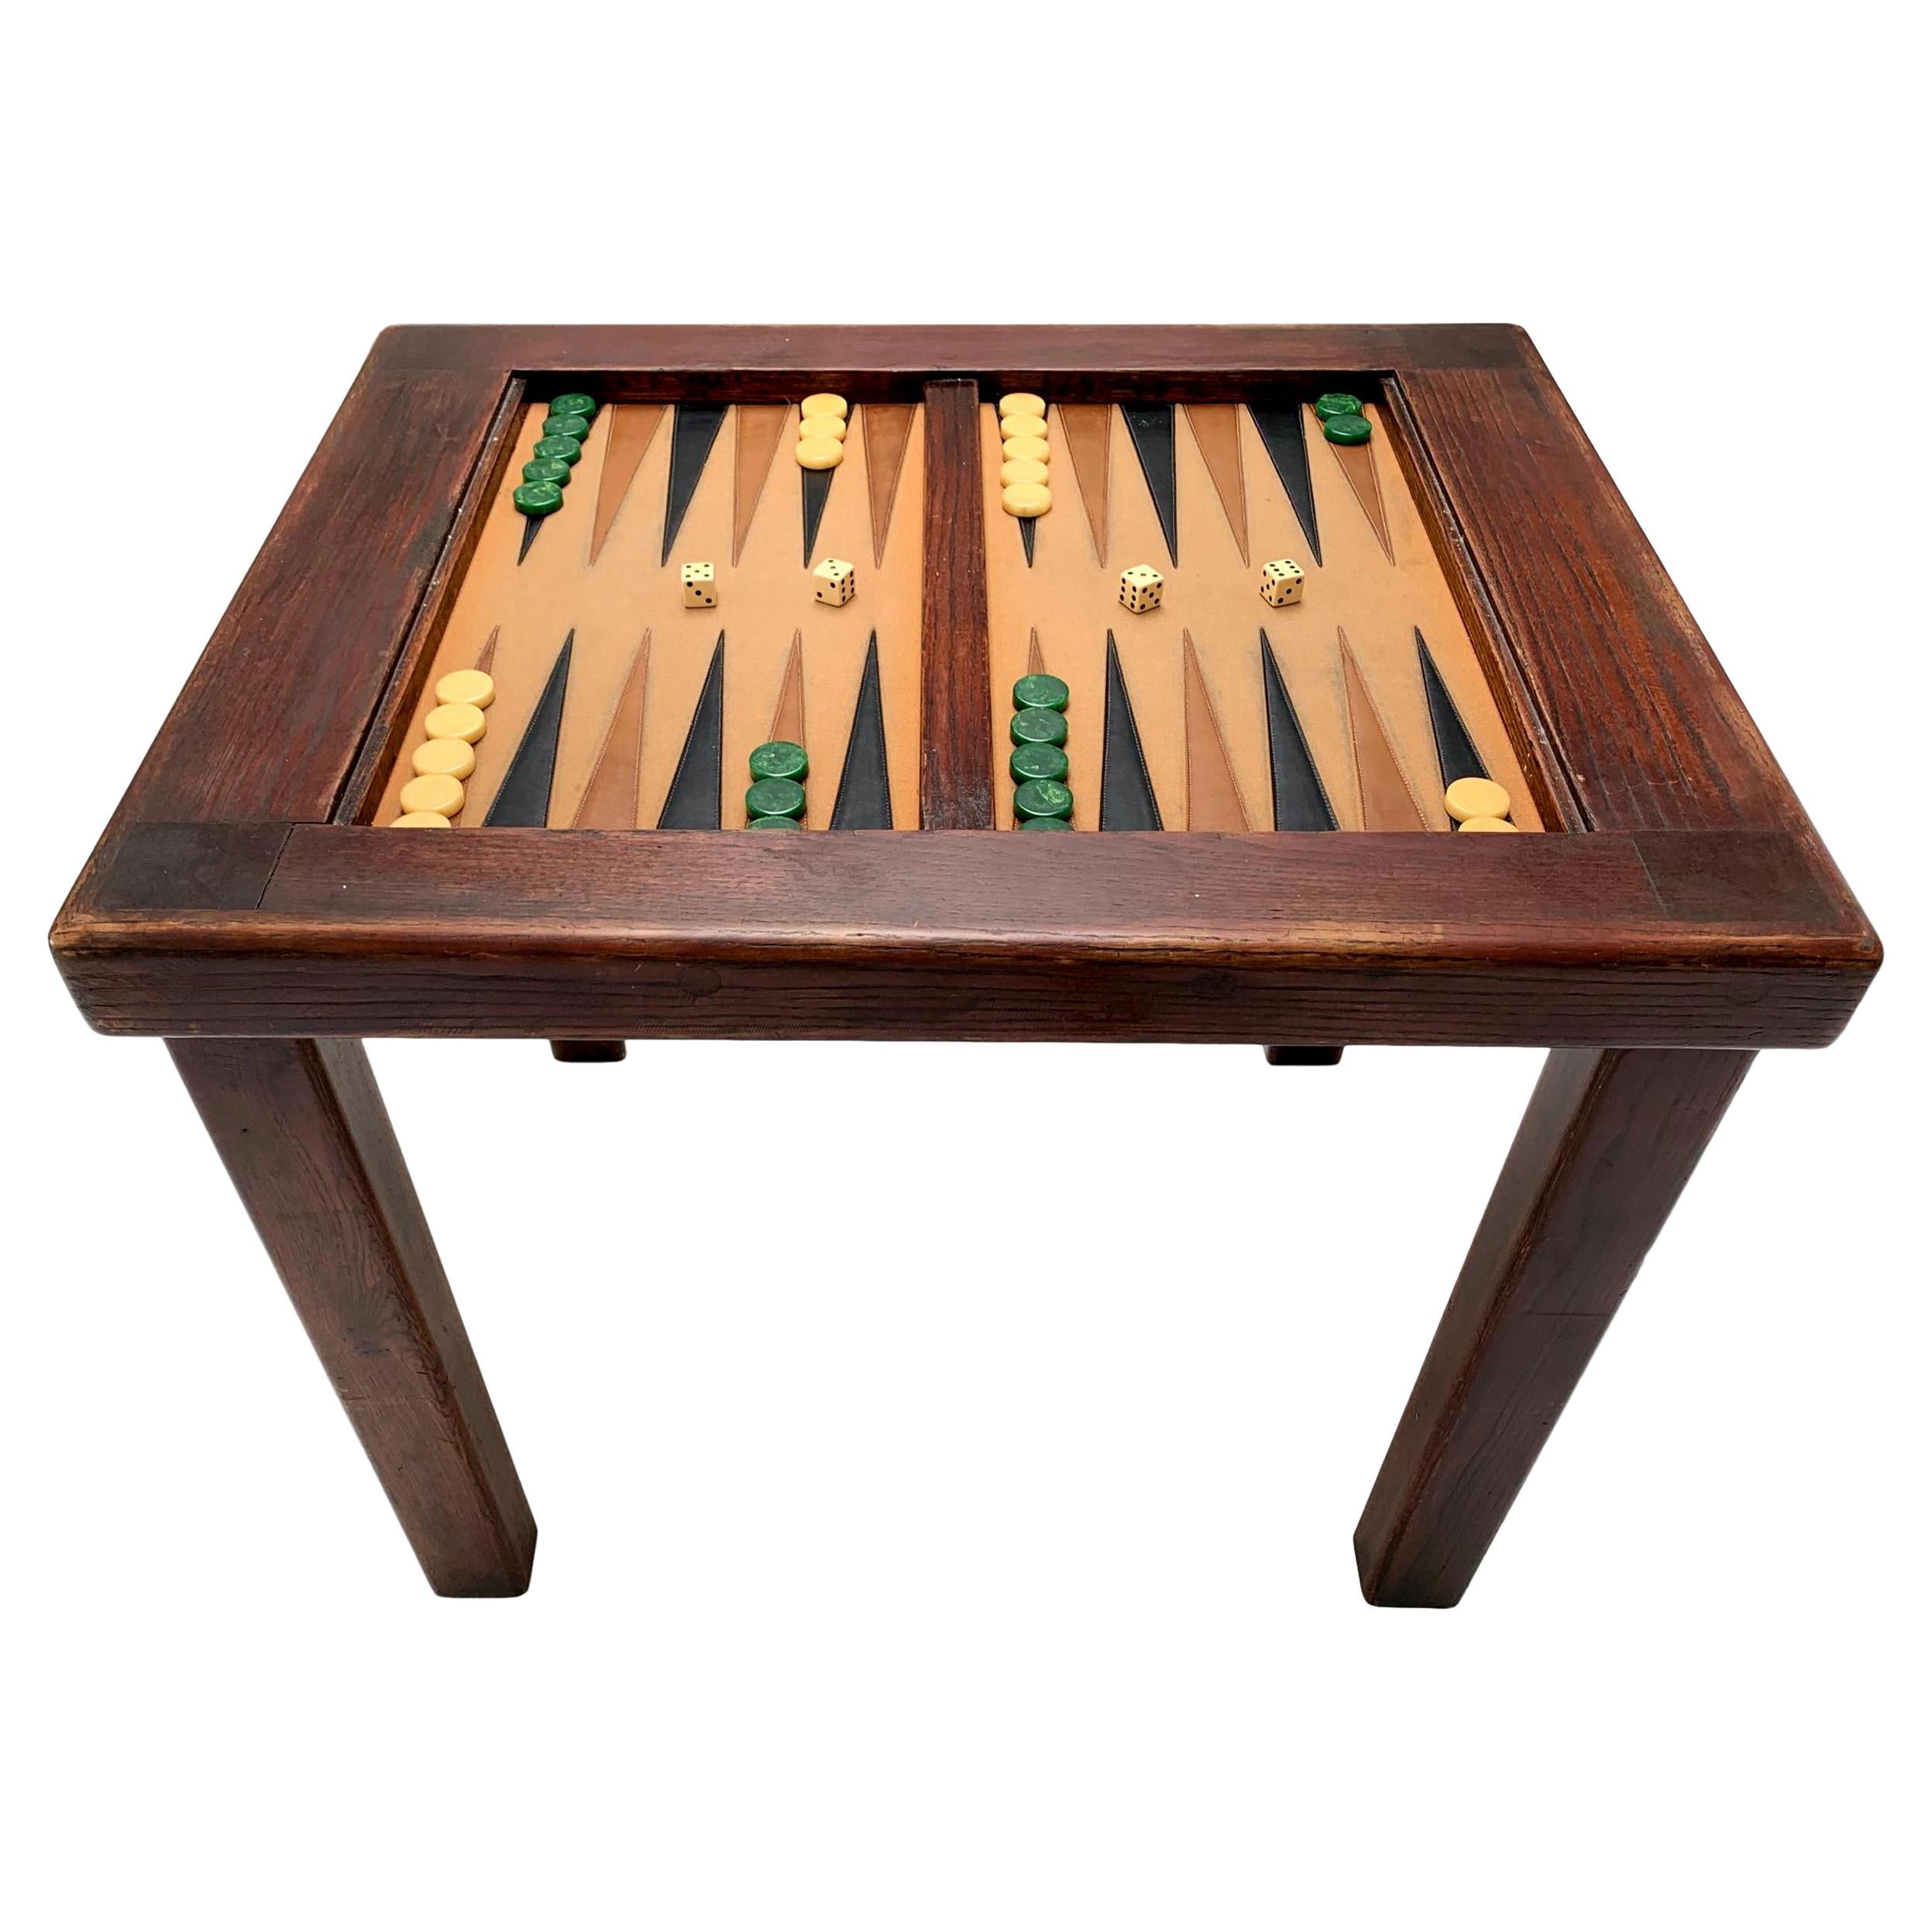 Vintage Backgammon Table